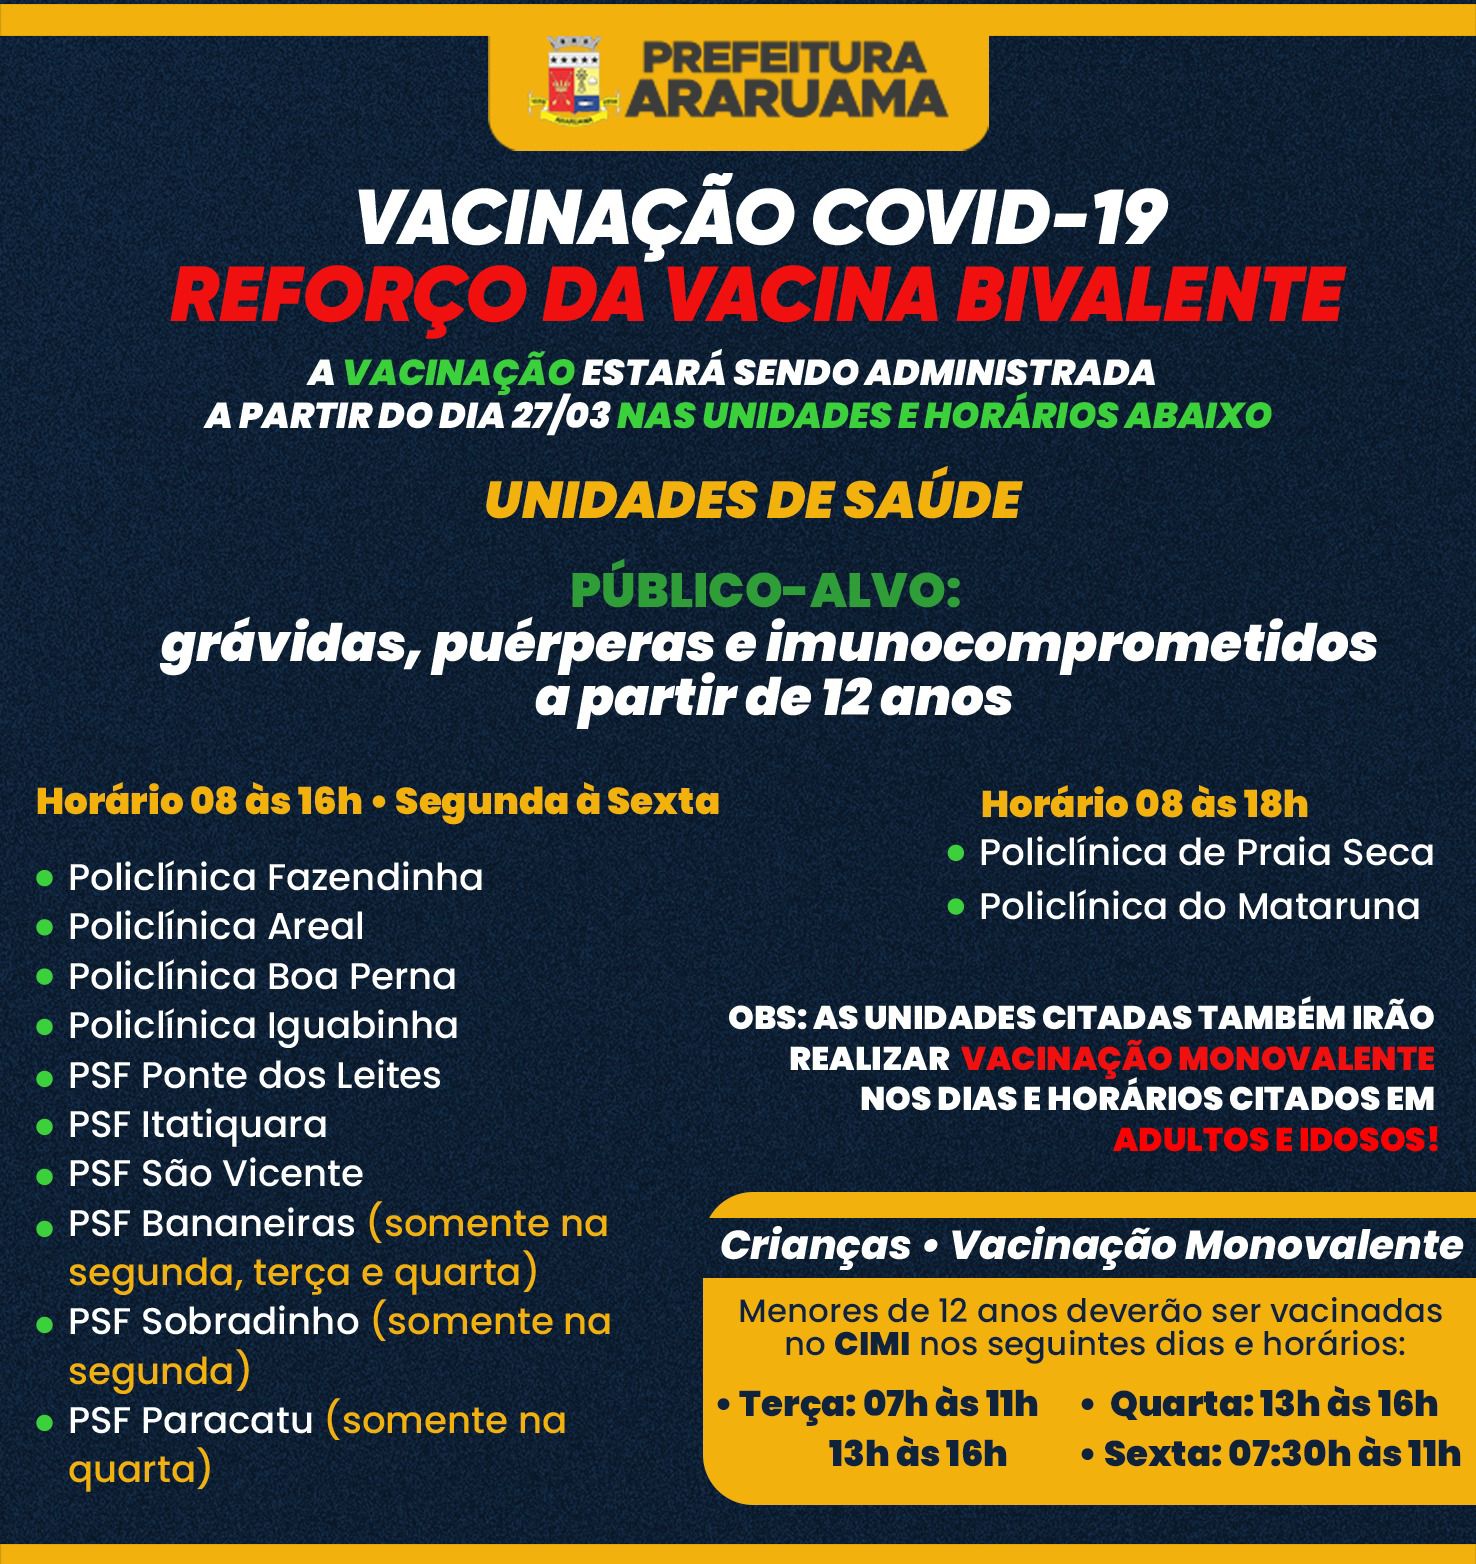 Prefeitura de Araruama vai vacinar gestantes, puérperas e imunocomprometidos a partir de 12 anos com a vacina bivalente contra a COVID-19 a partir da próxima segunda-feira